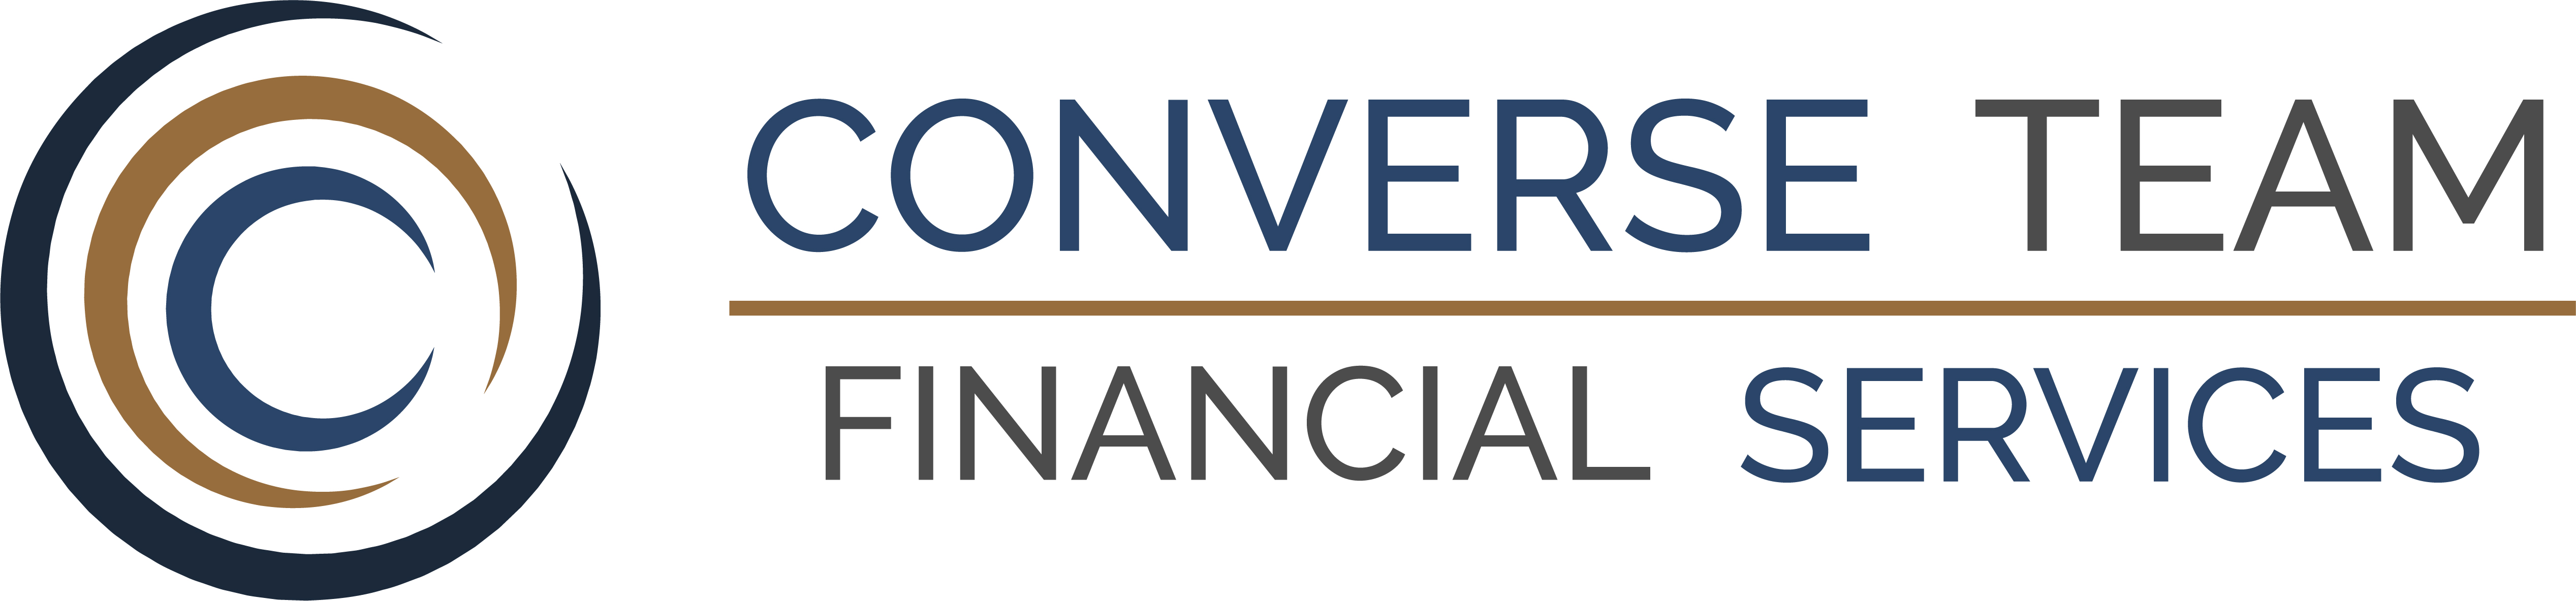 Converse Team Financial Services logo